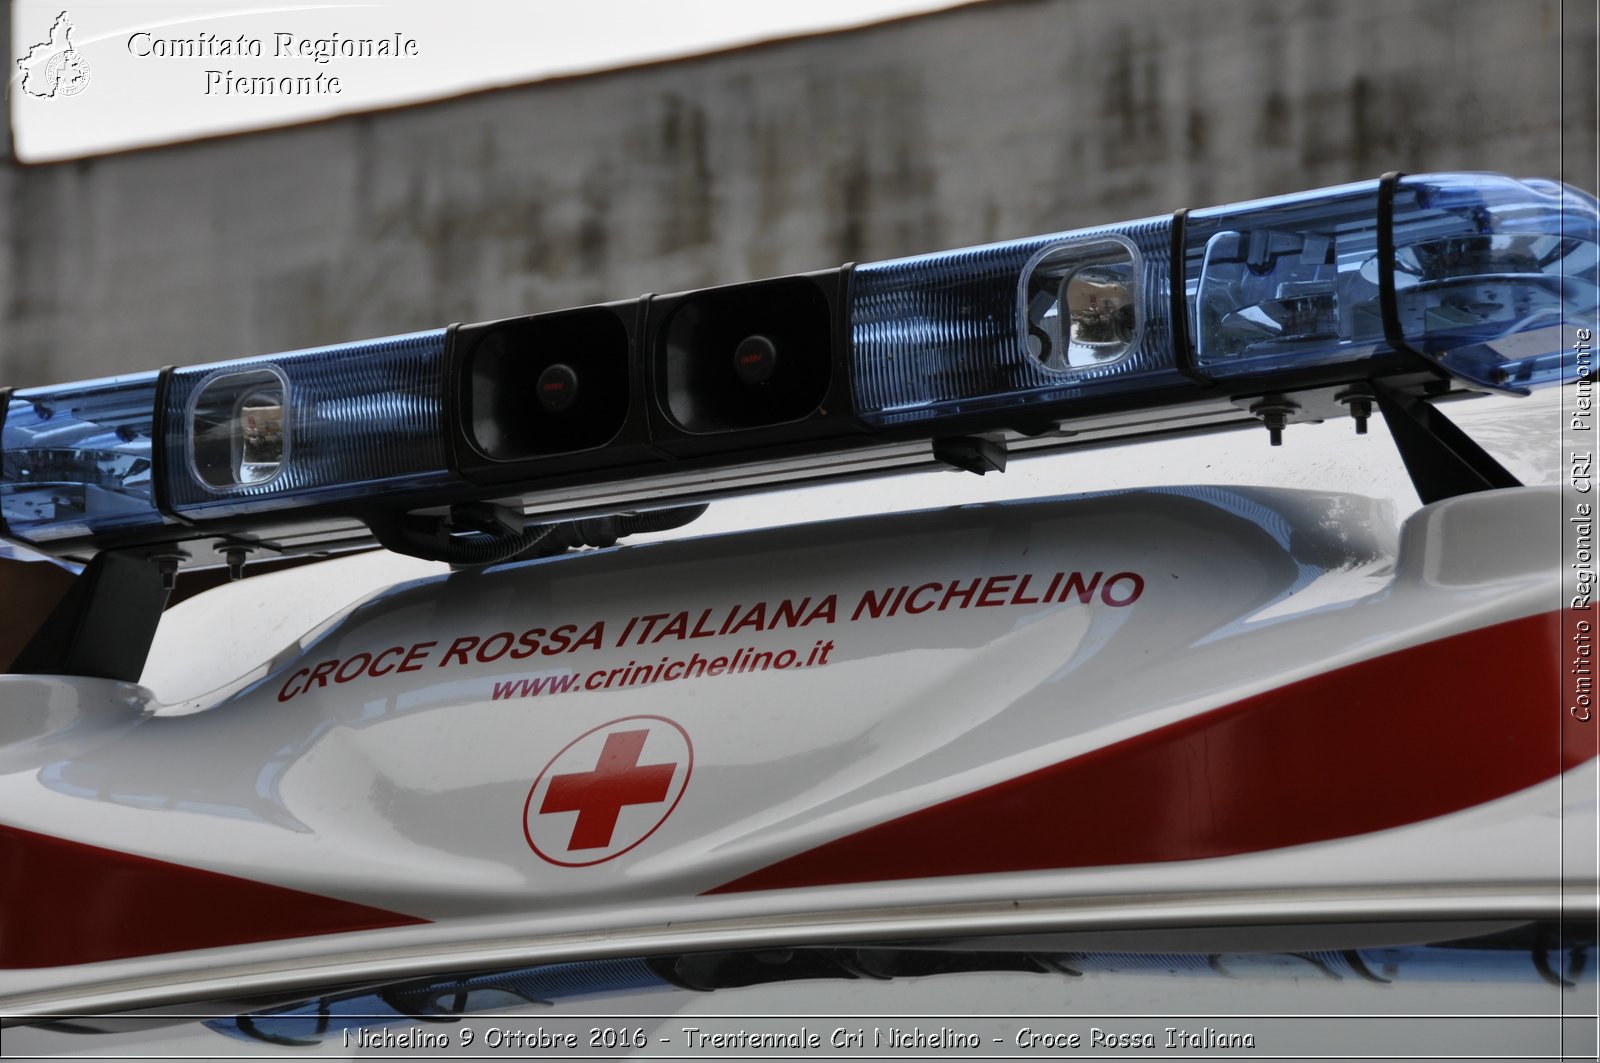 NICHELINO – Alla Croce Rossa 12 posti disponibili per il servizio civile